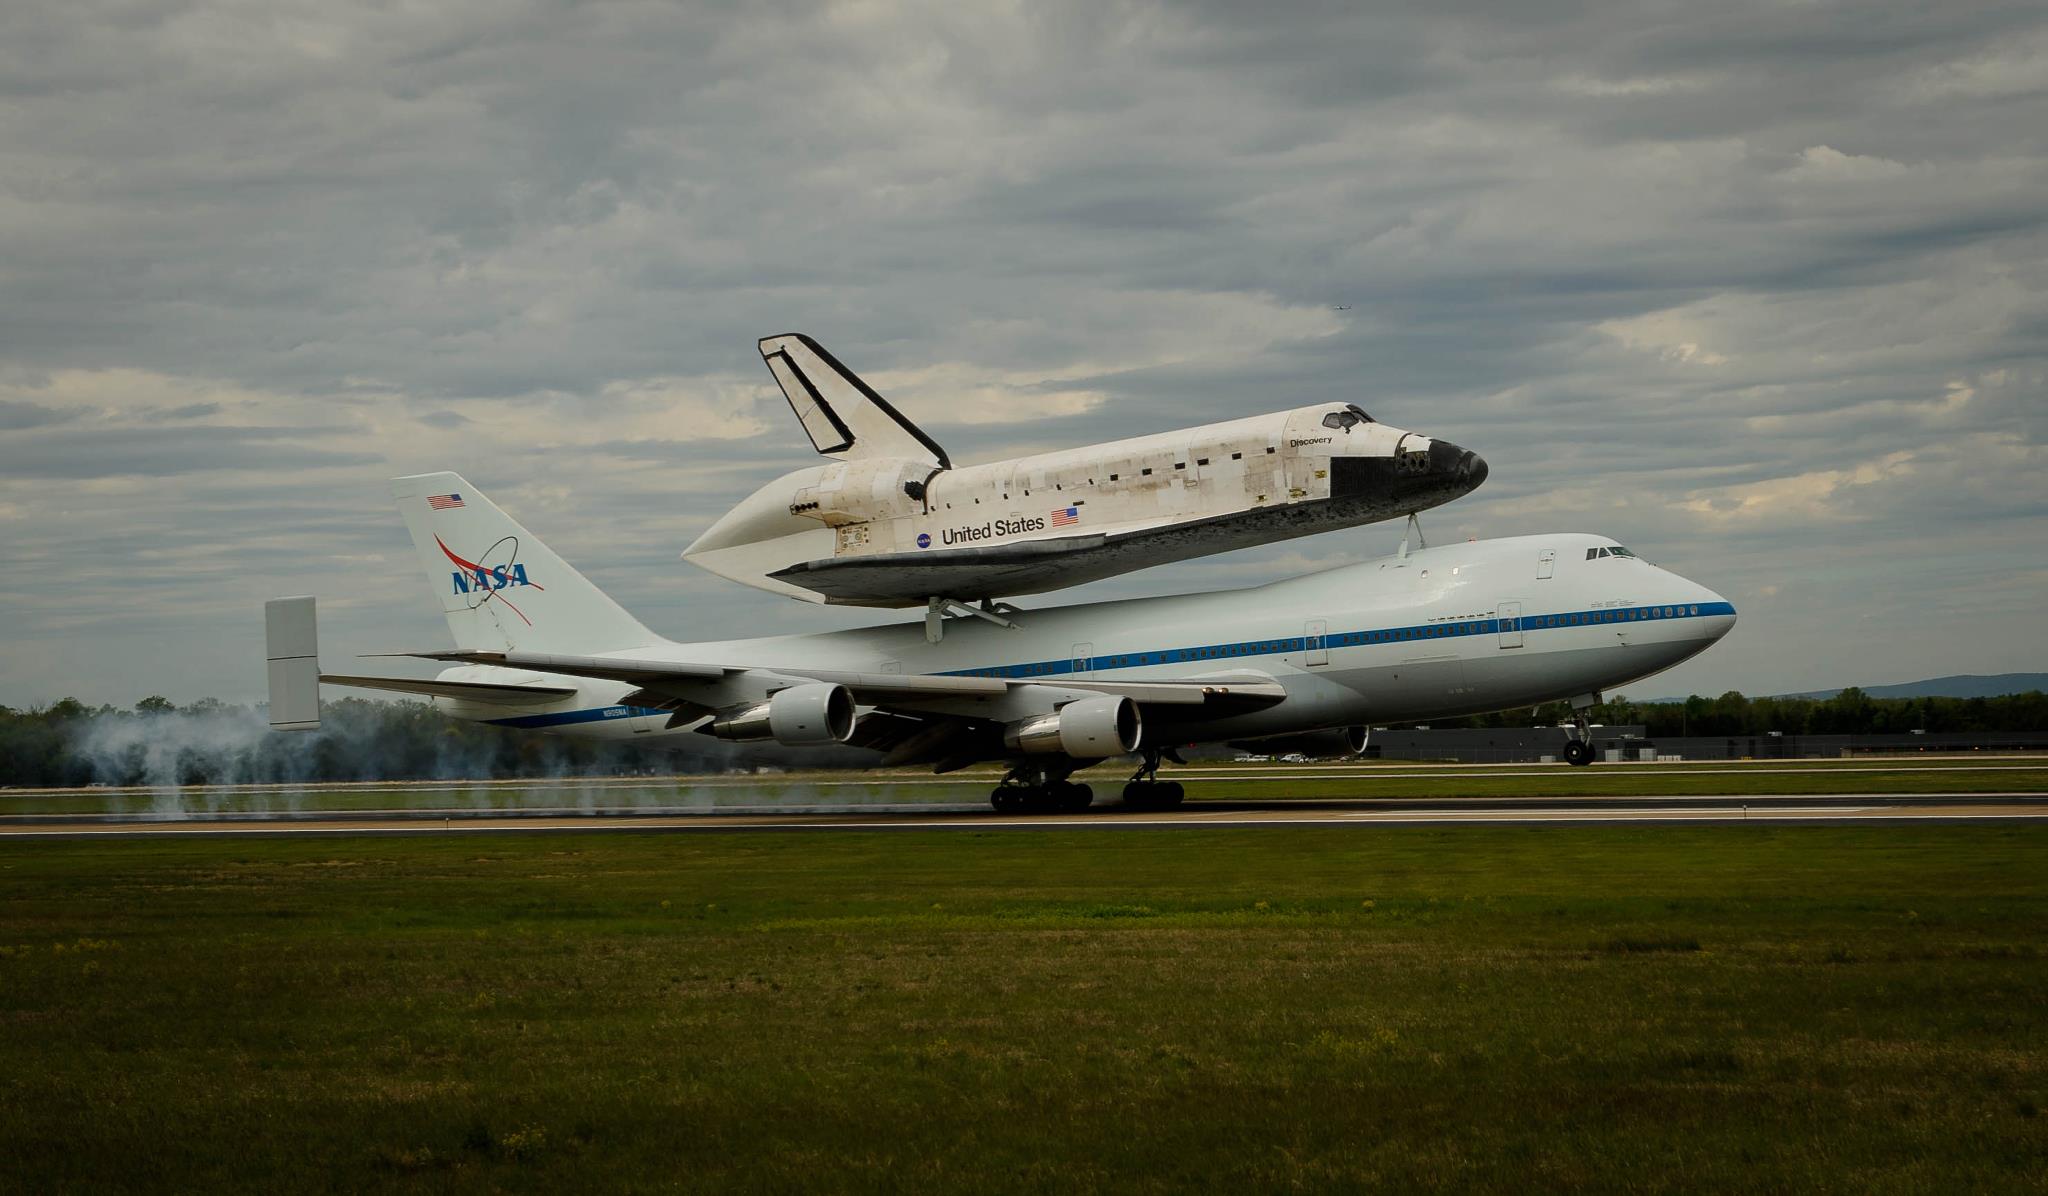 Discovery and NASA 905 land at Dulles International Airport, 17 April 2012. (NASA)